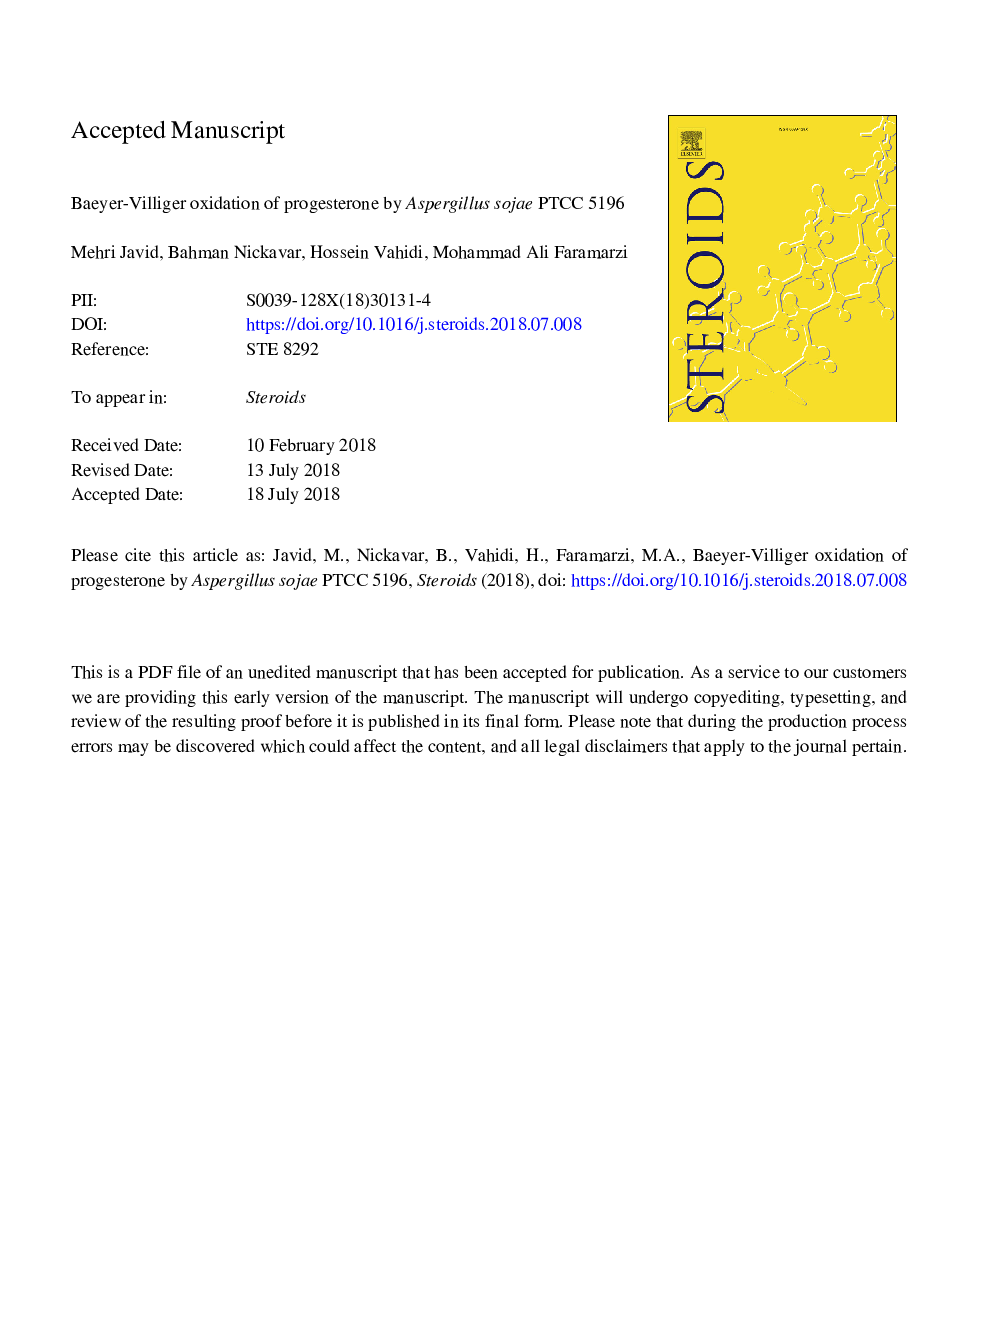 Baeyer-Villiger oxidation of progesterone by Aspergillus sojae PTCC 5196